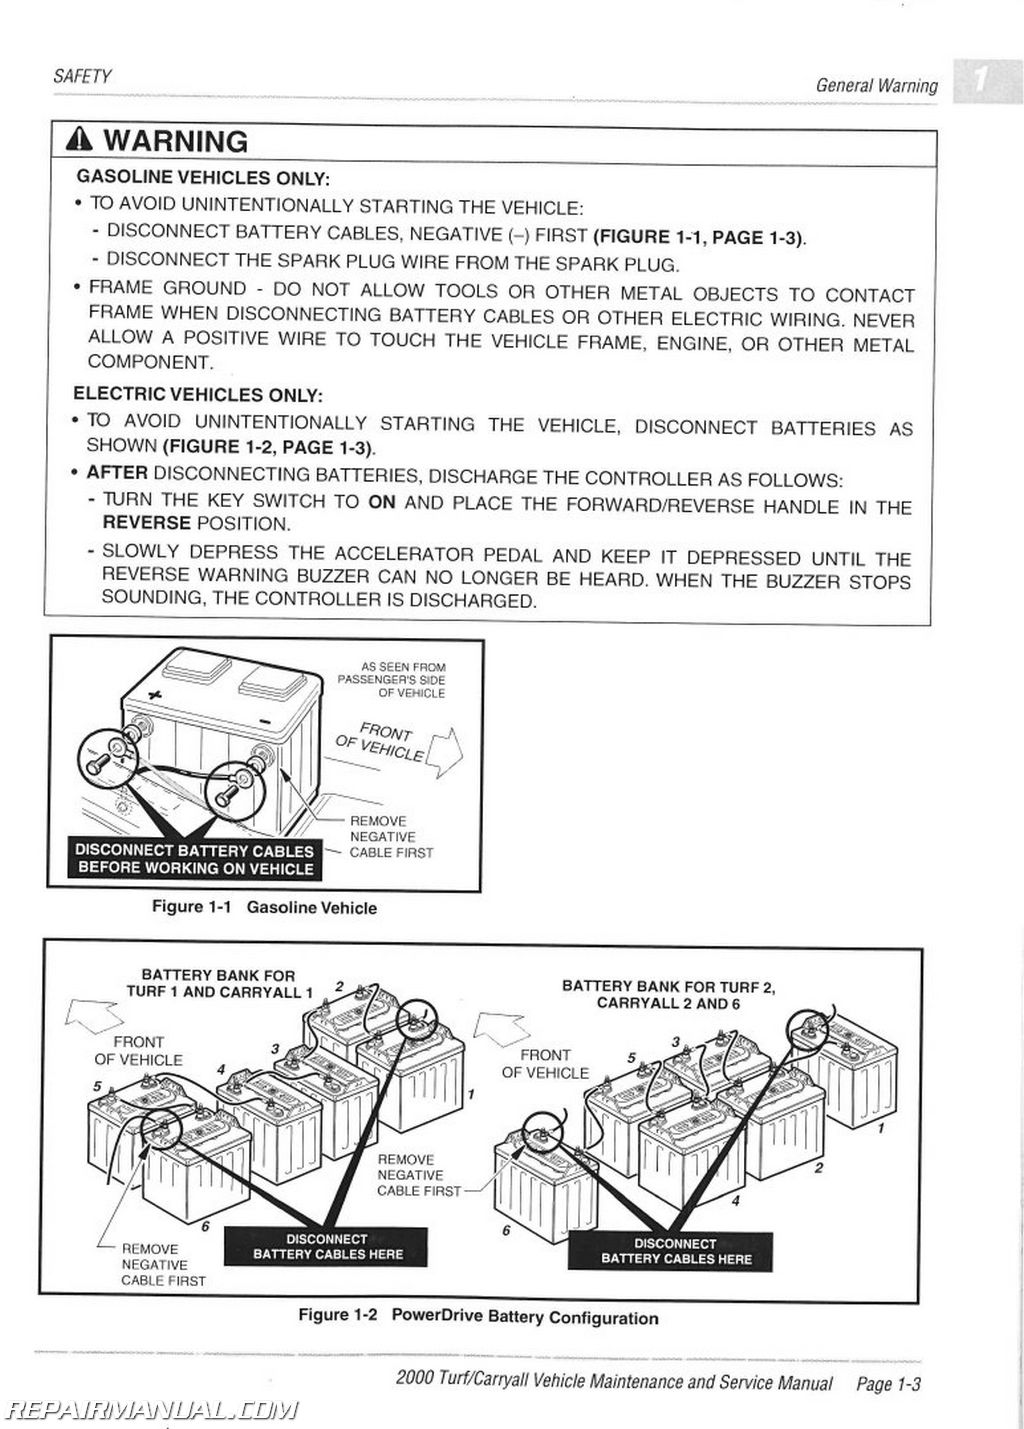 club car carryall 6 parts manual